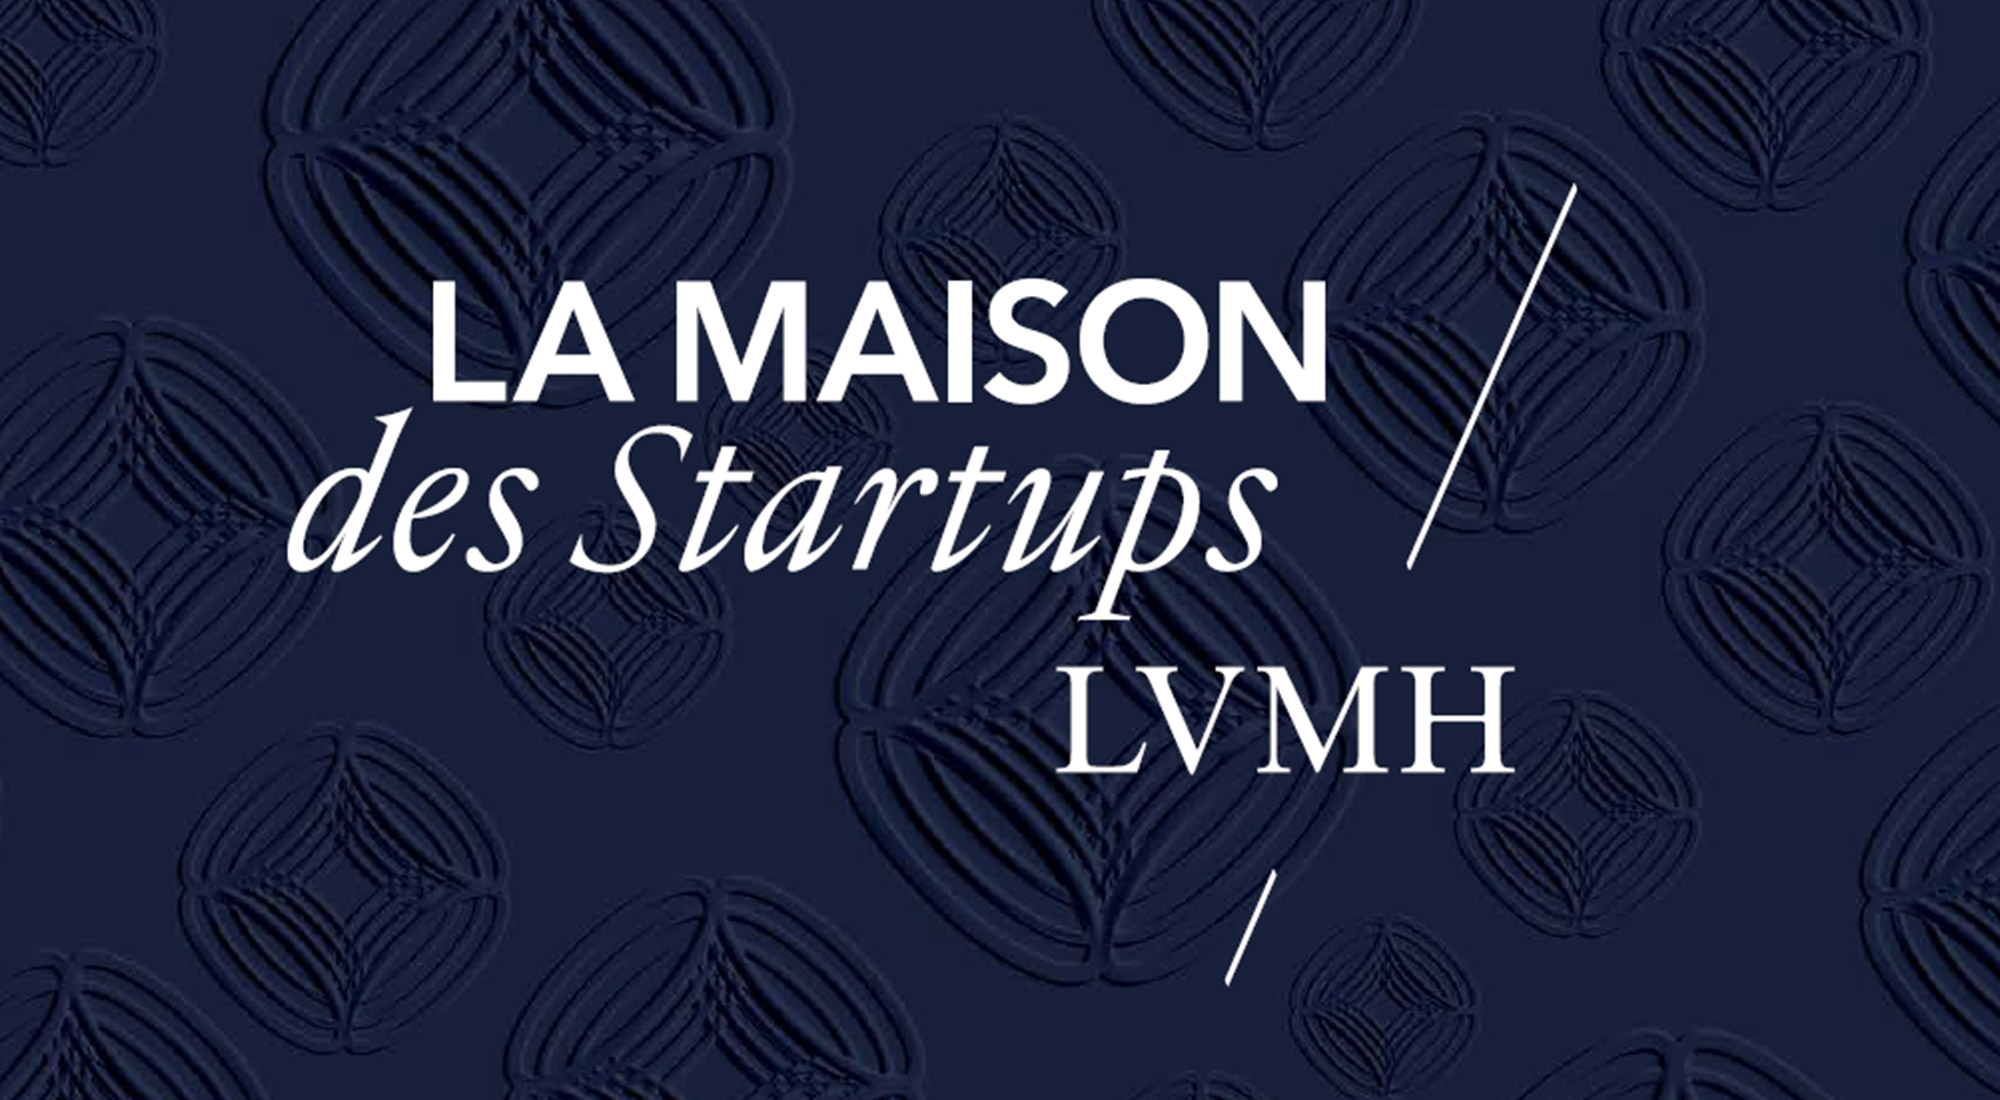 startups lvmh